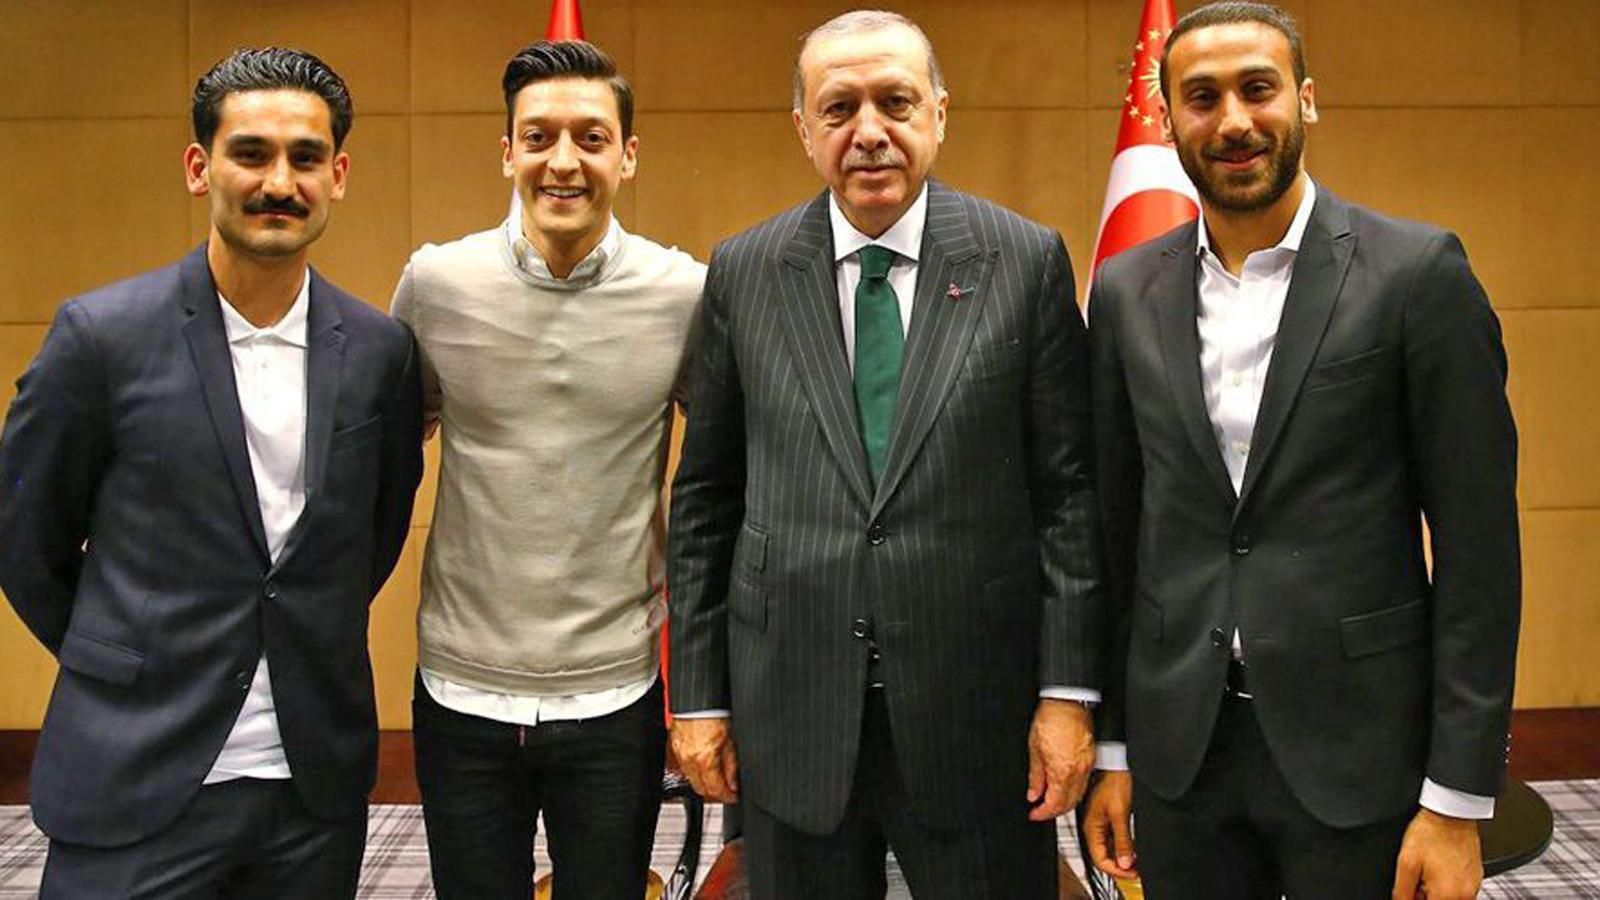 
                <strong>Foto mit Erdogan</strong><br>
                Im Vorfeld der WM 2018 sorgten Ilkay Gündogan und Mesut Özil dann für einen beispiellosen Aufreger in der Geschichte des DFB, als sie für ein Foto mit dem türkischen Ministerpräsidenten Recep Tayyip Erdogan posierten. Die Diskussionen über das Bild zogen sich über das ganze desaströse Turnier hin, Özil wurde zum Sündenbock für das frühe Aus der Nationalmannschaft in Russland gemacht. Lange schwieg Özil zu dem Eklat, dann erklärte er seinen Rücktritt aus der Nationalmannschaft.
              